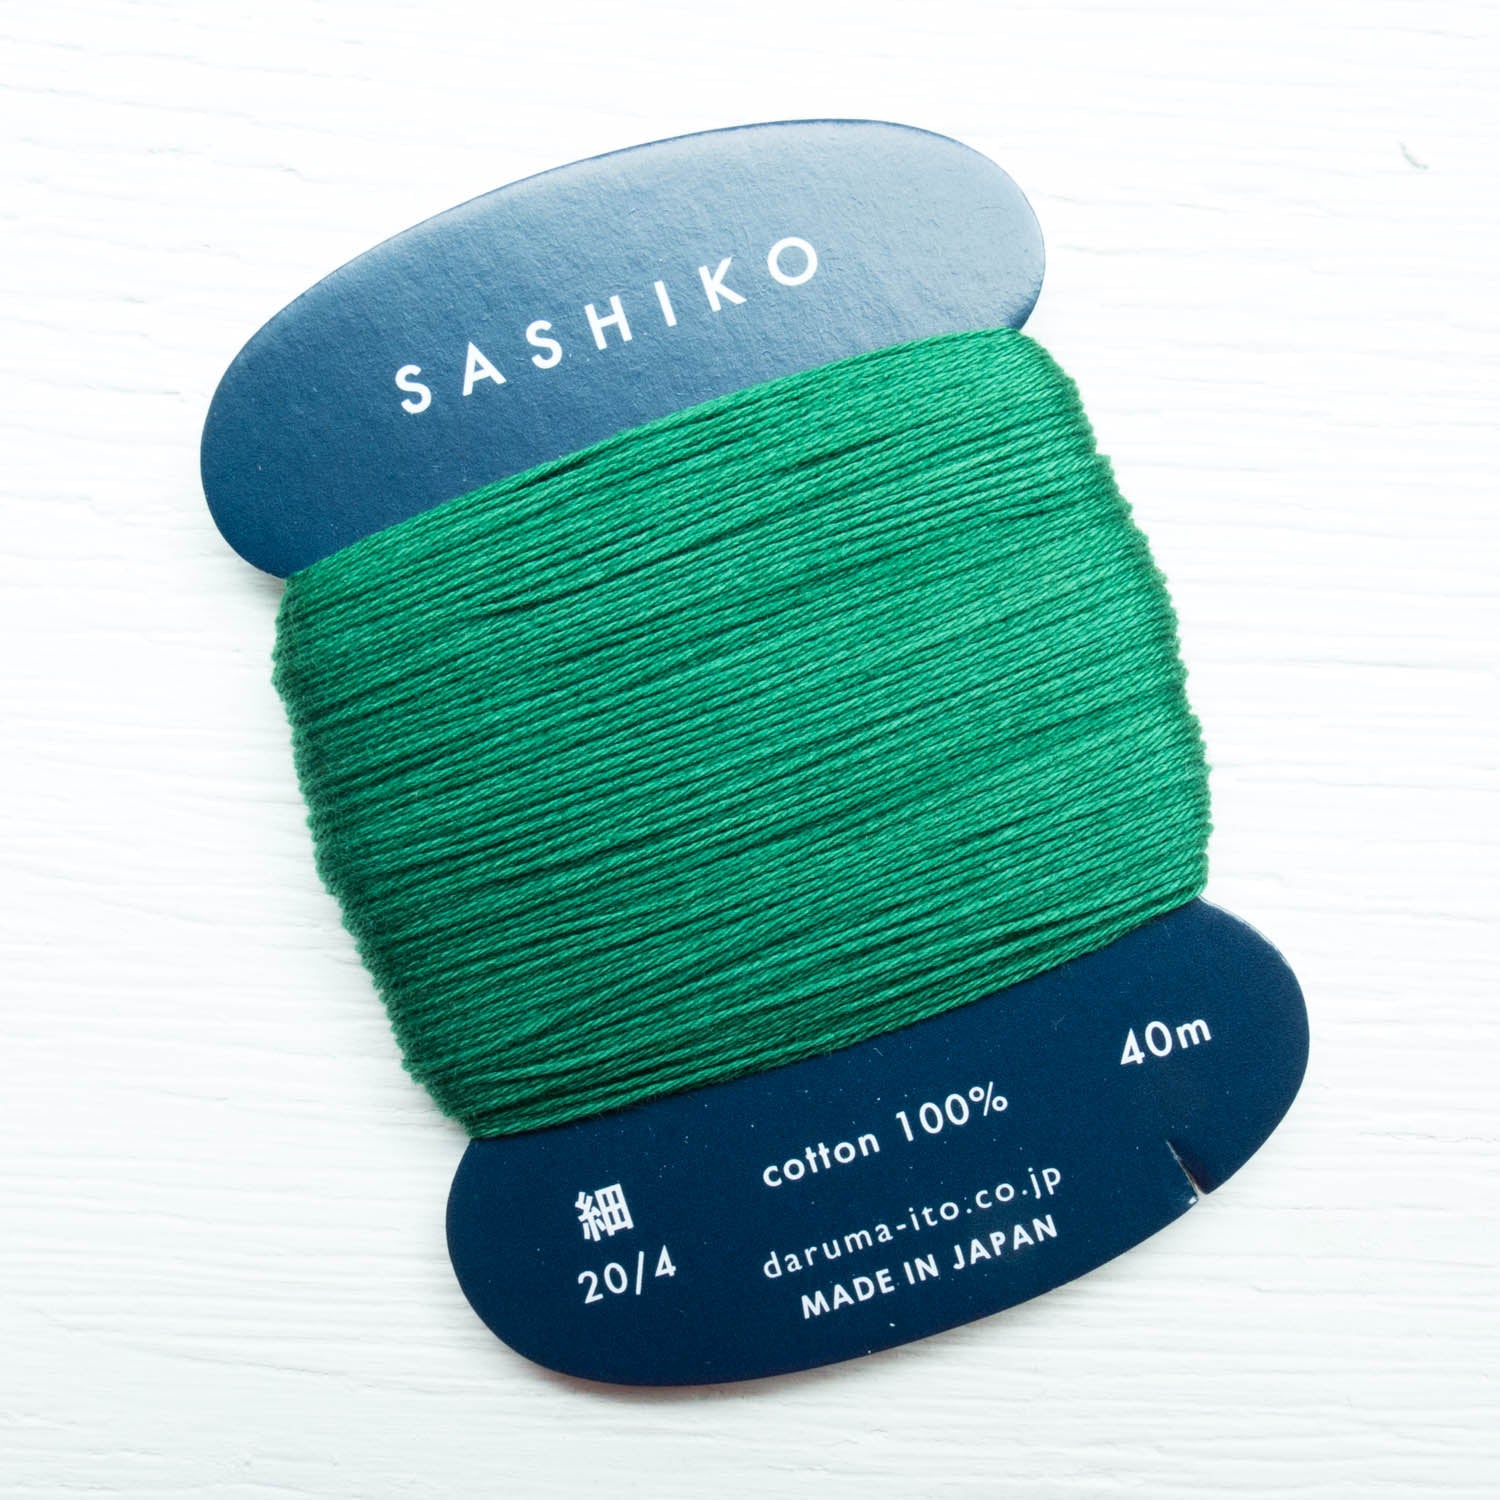 ORIM - Daruma - Sashiko Cotton Thread 20/4 - 0208 - Hunter Green